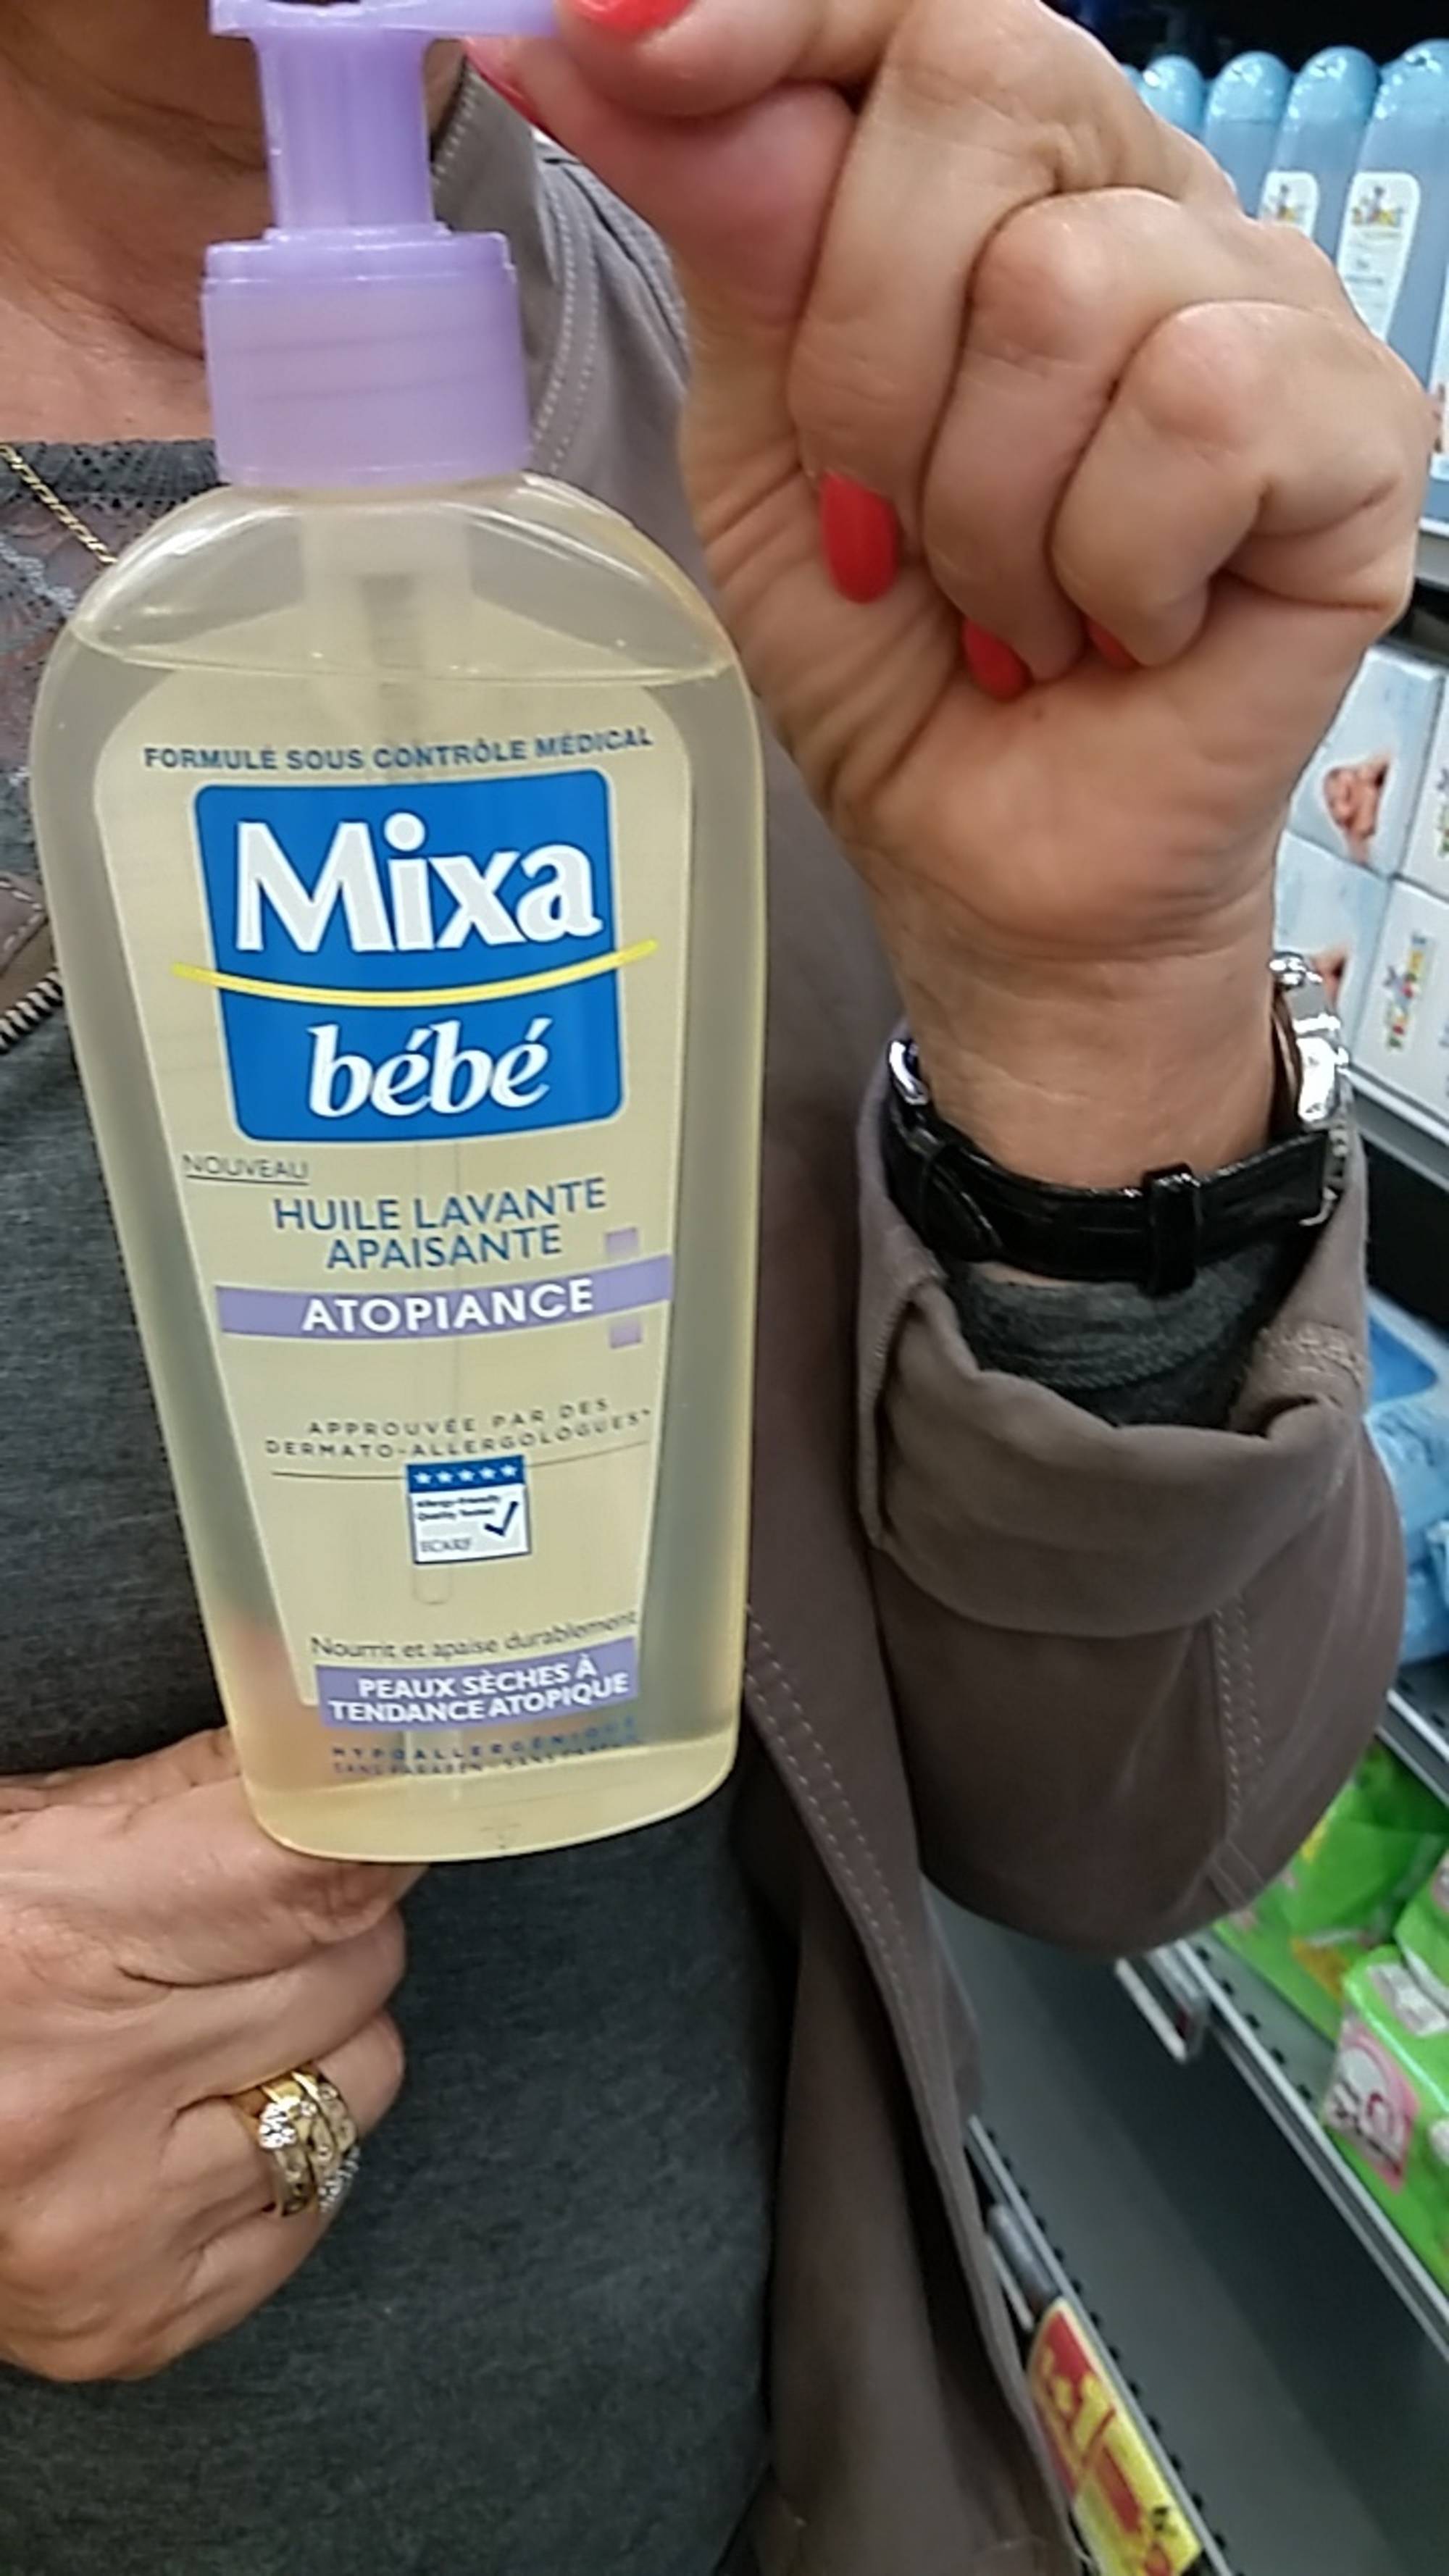 MIXA BÉBÉ - Huile lavante apaisante Atopiance